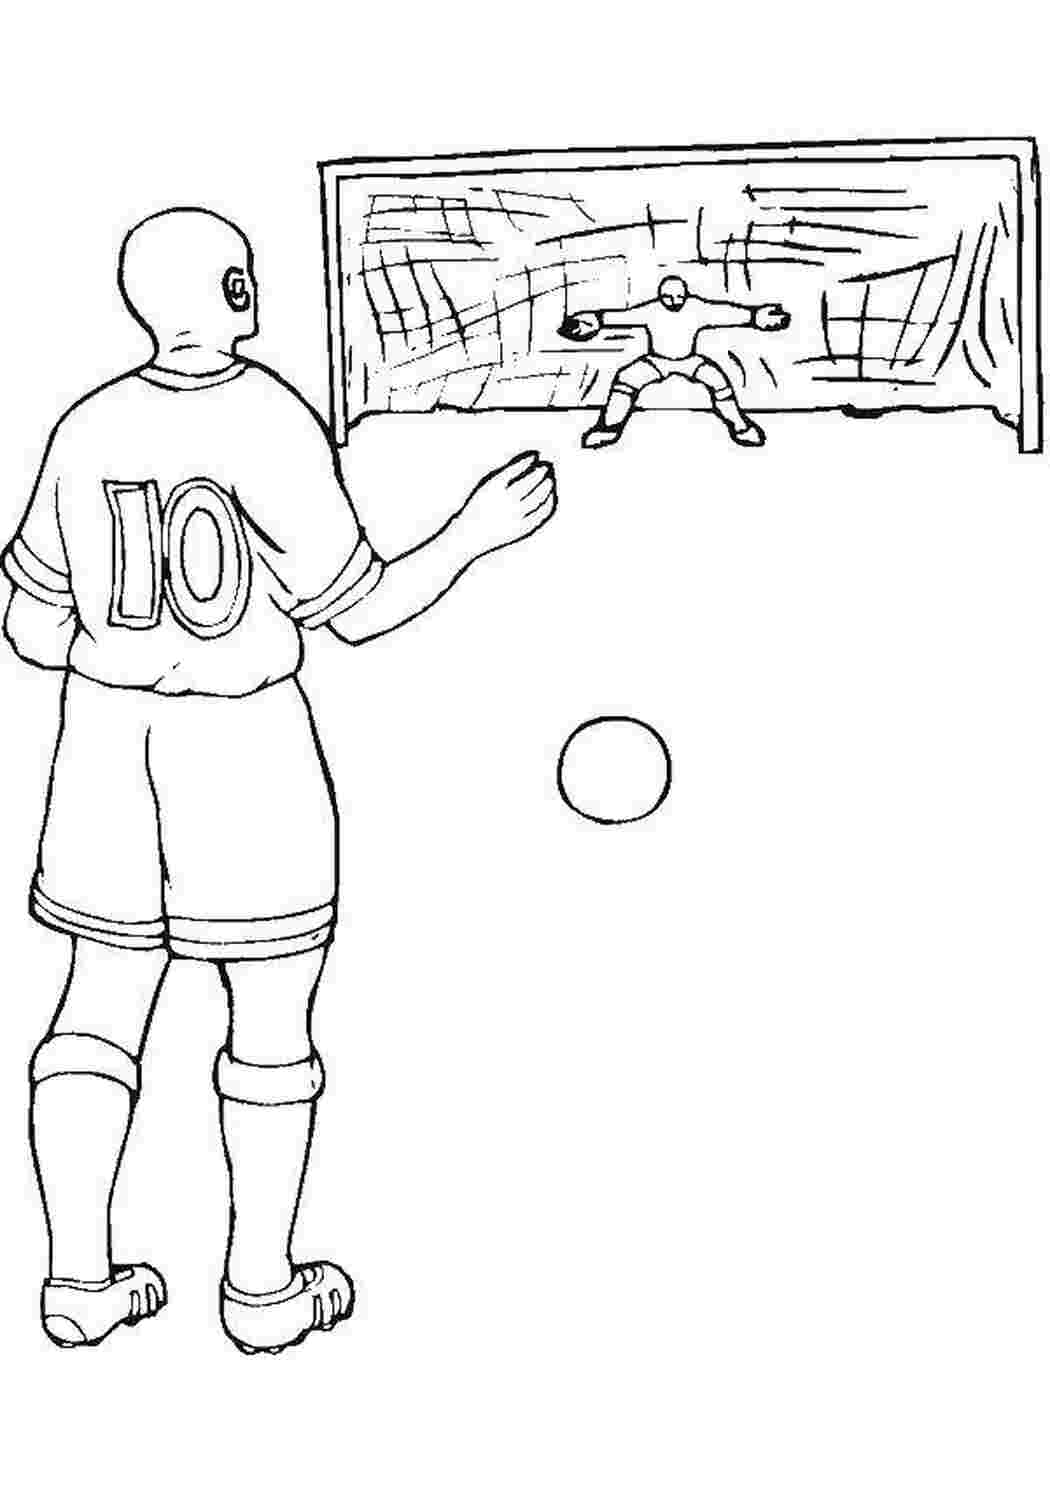 Рисунок на футбольную тему карандашом